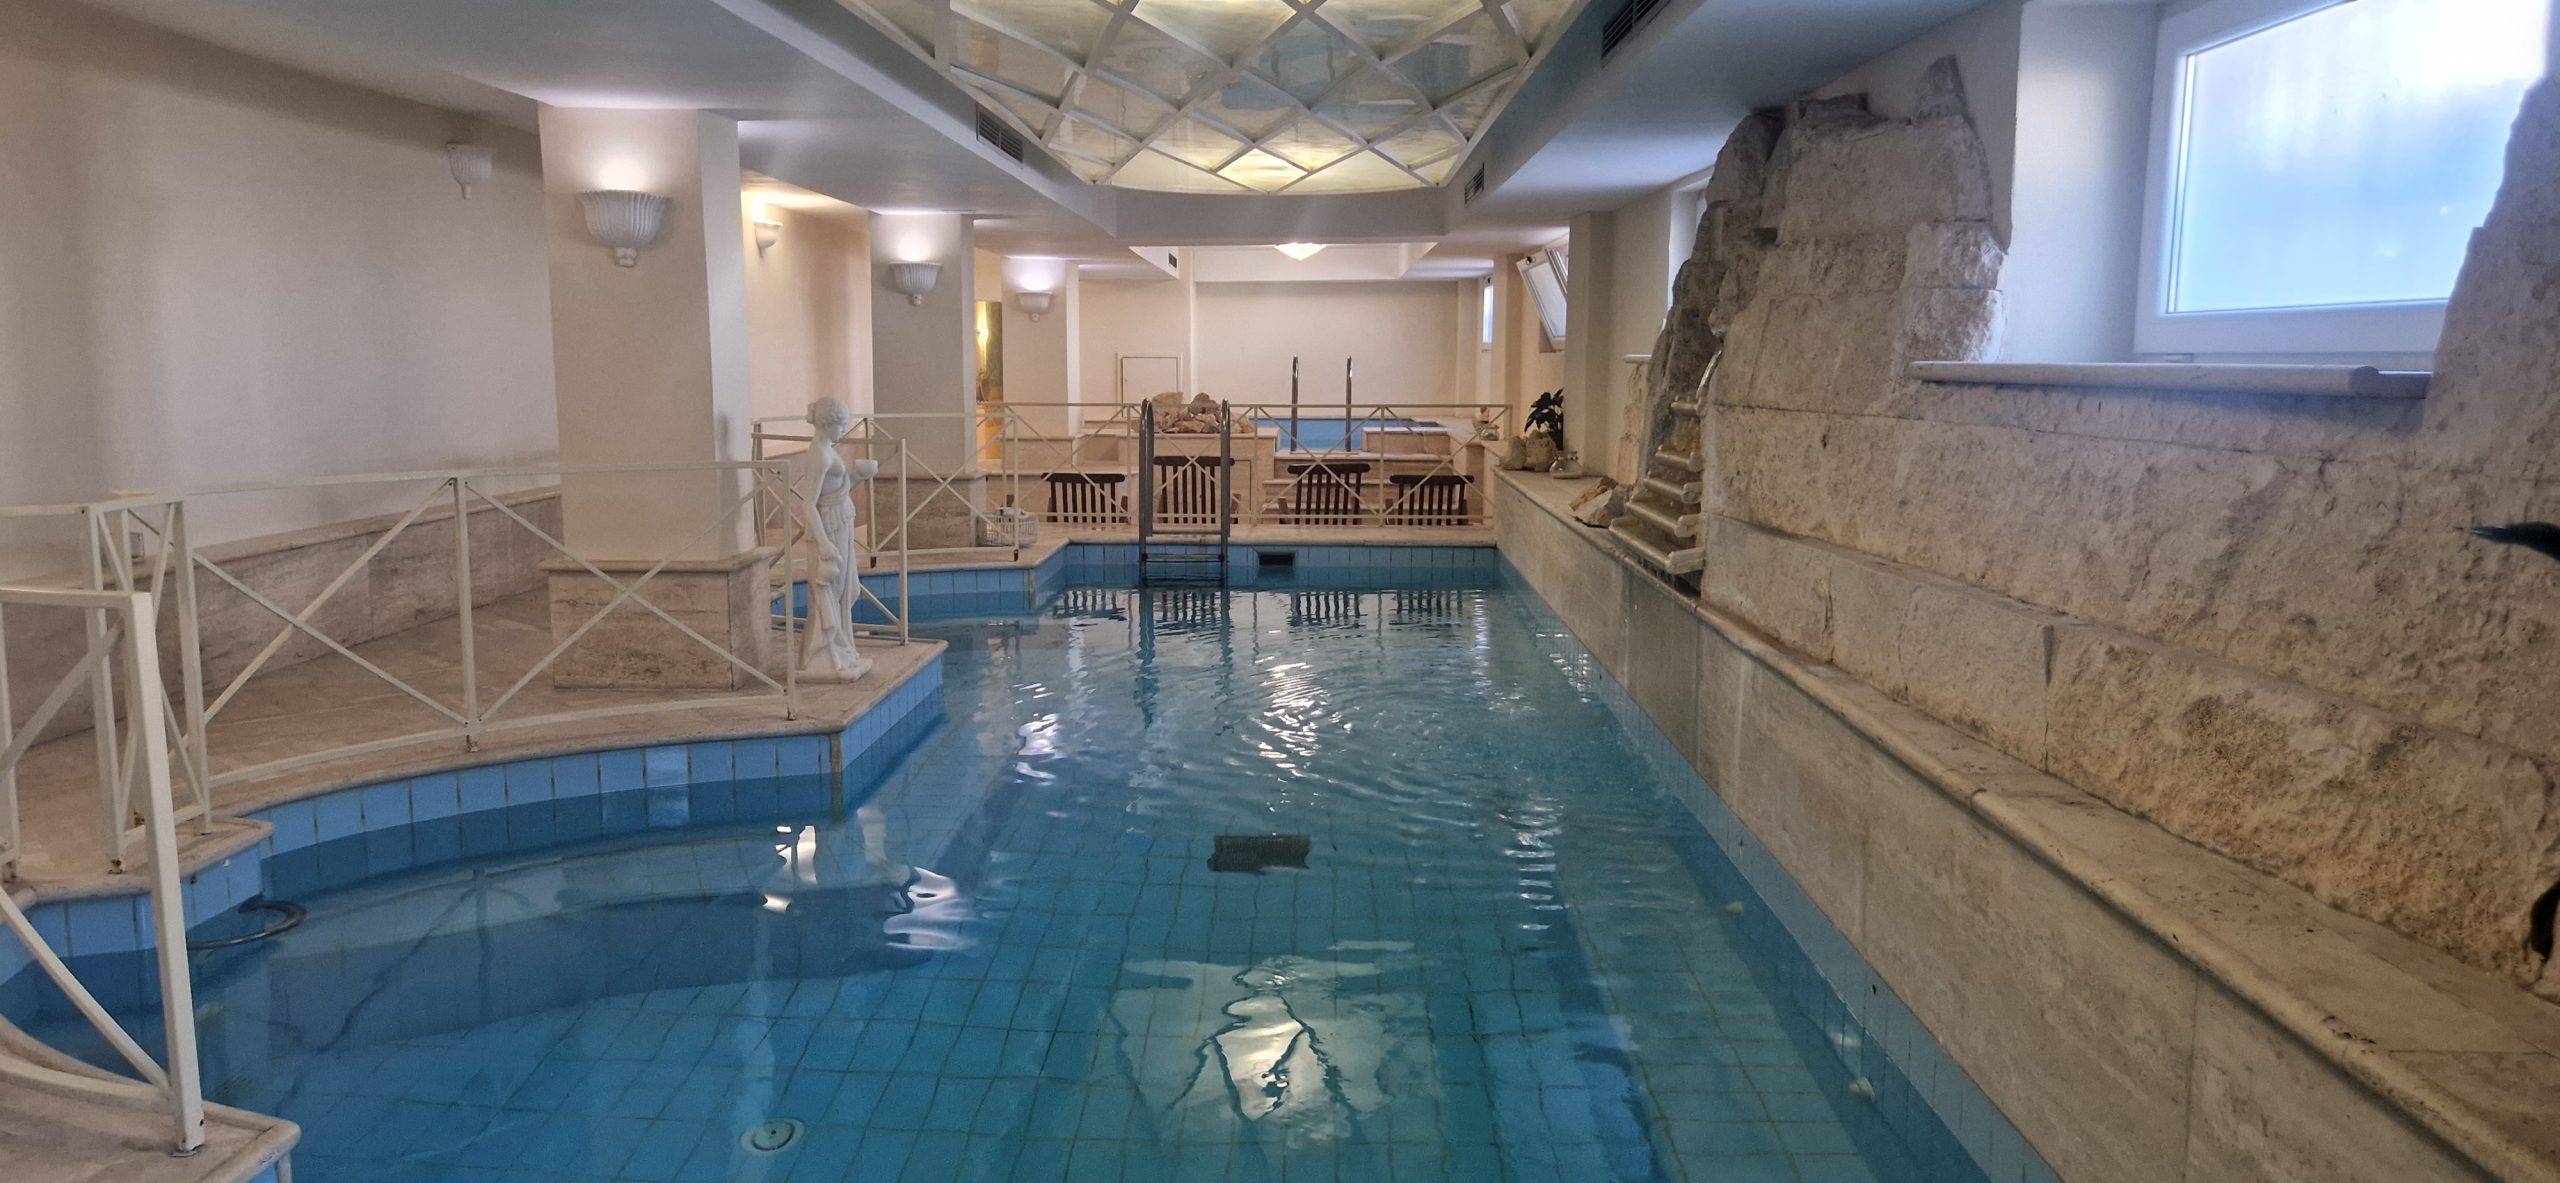 piscina termale dell'hotel terme mare blu